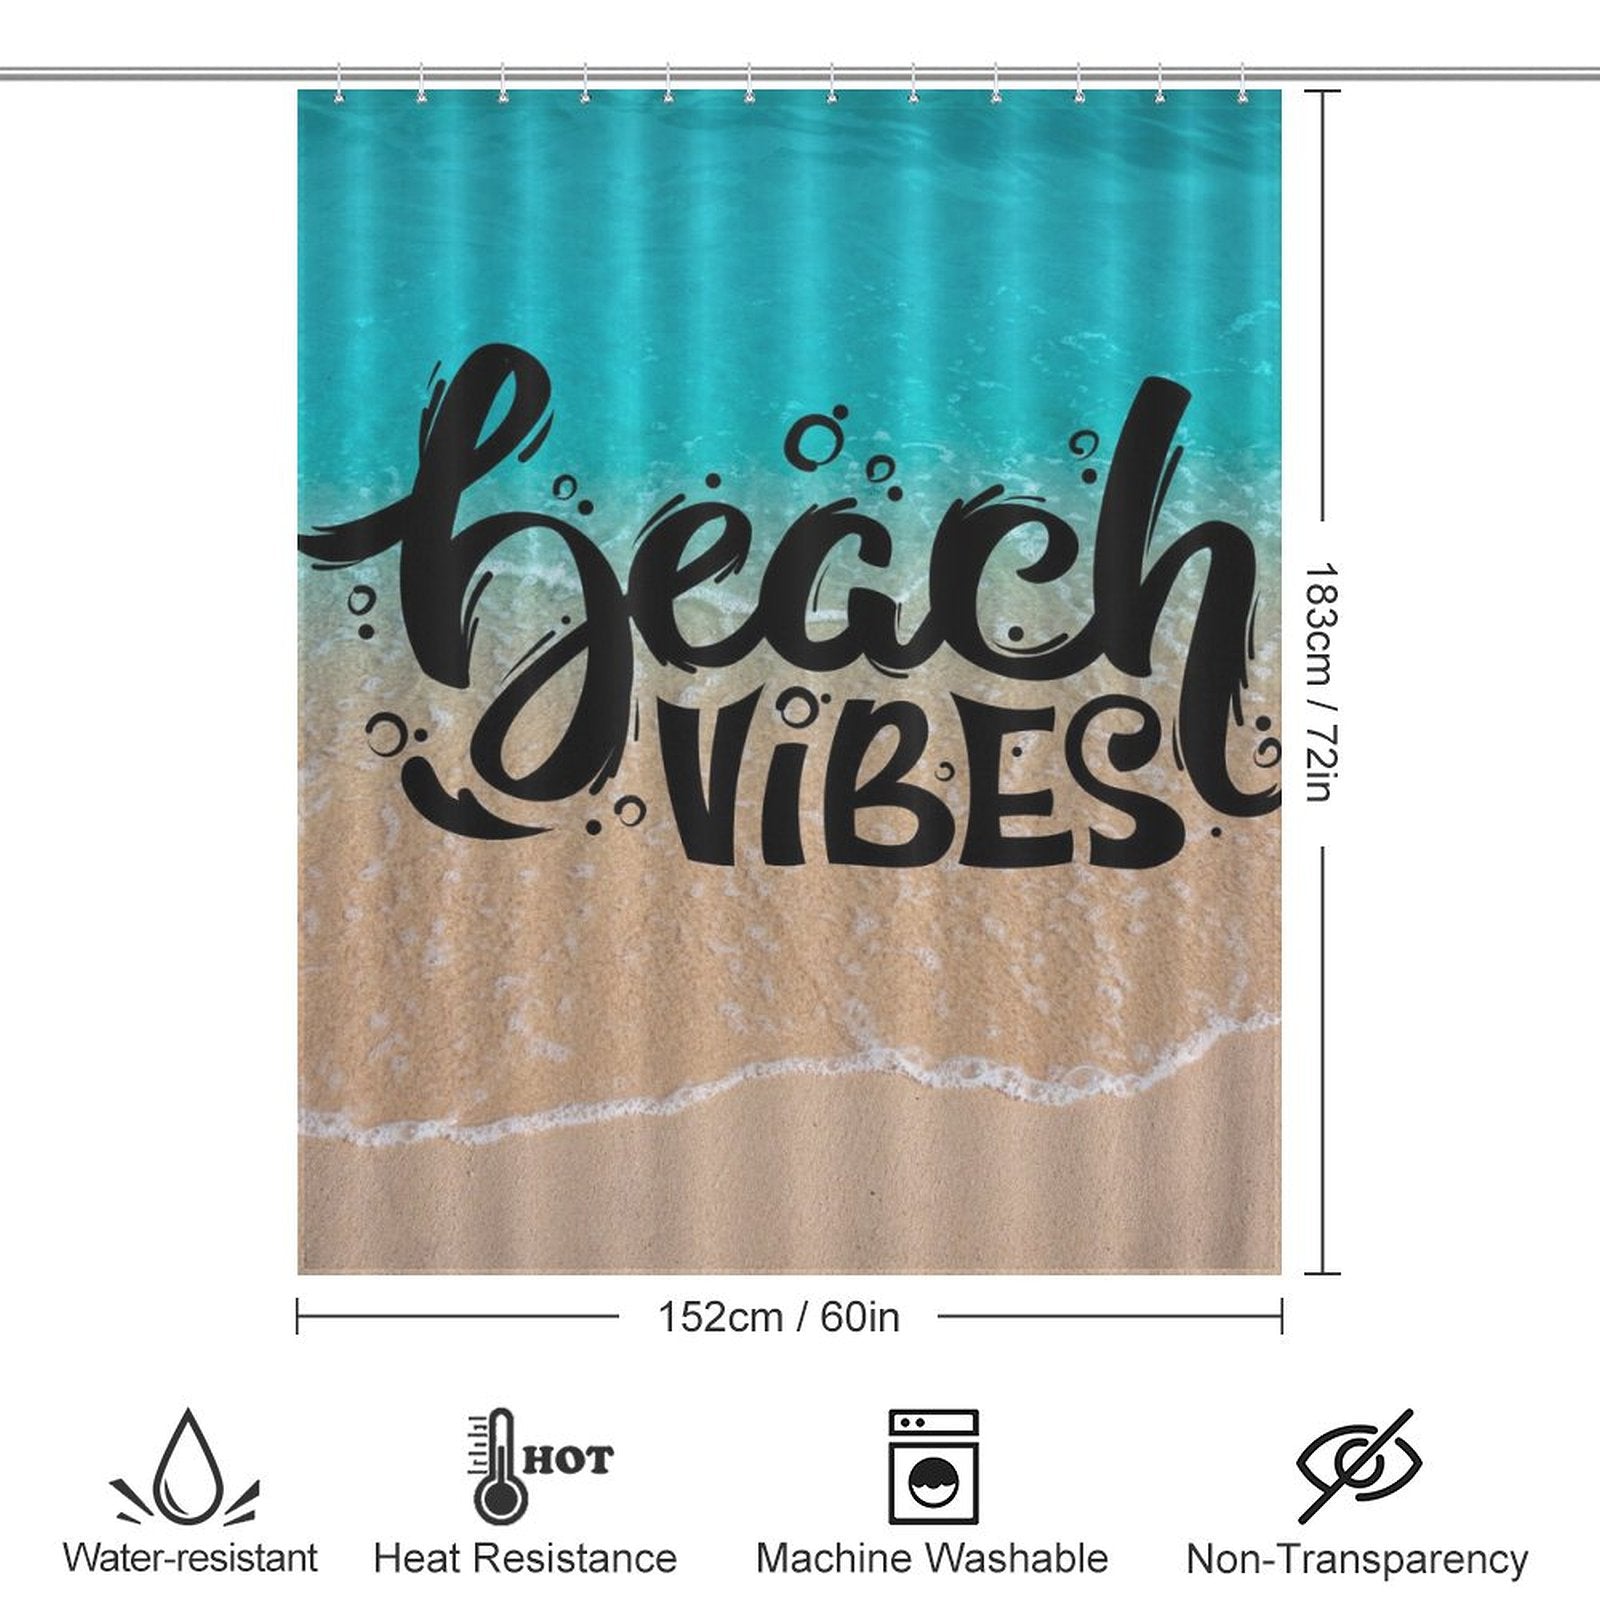 Blue Coastal Beach Shower Curtain